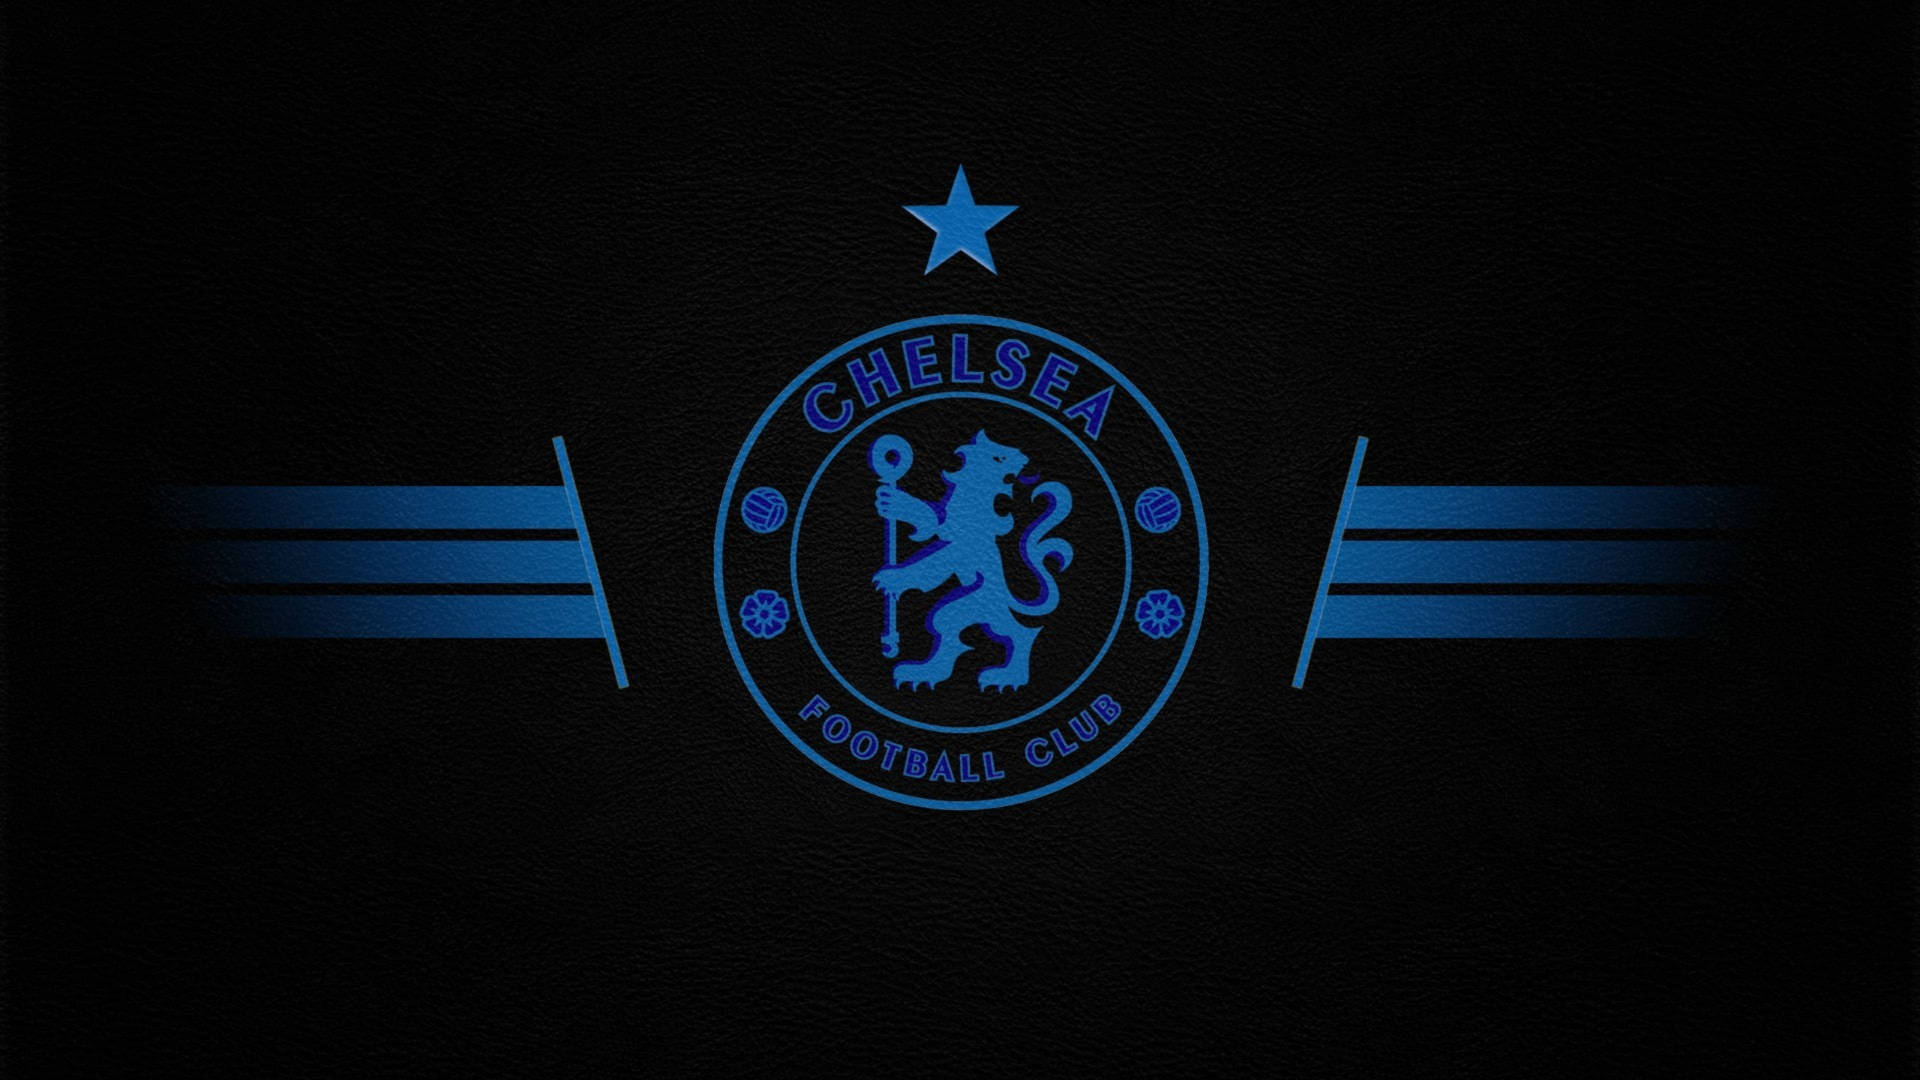 Premier League Chelsea F.c. Emblem